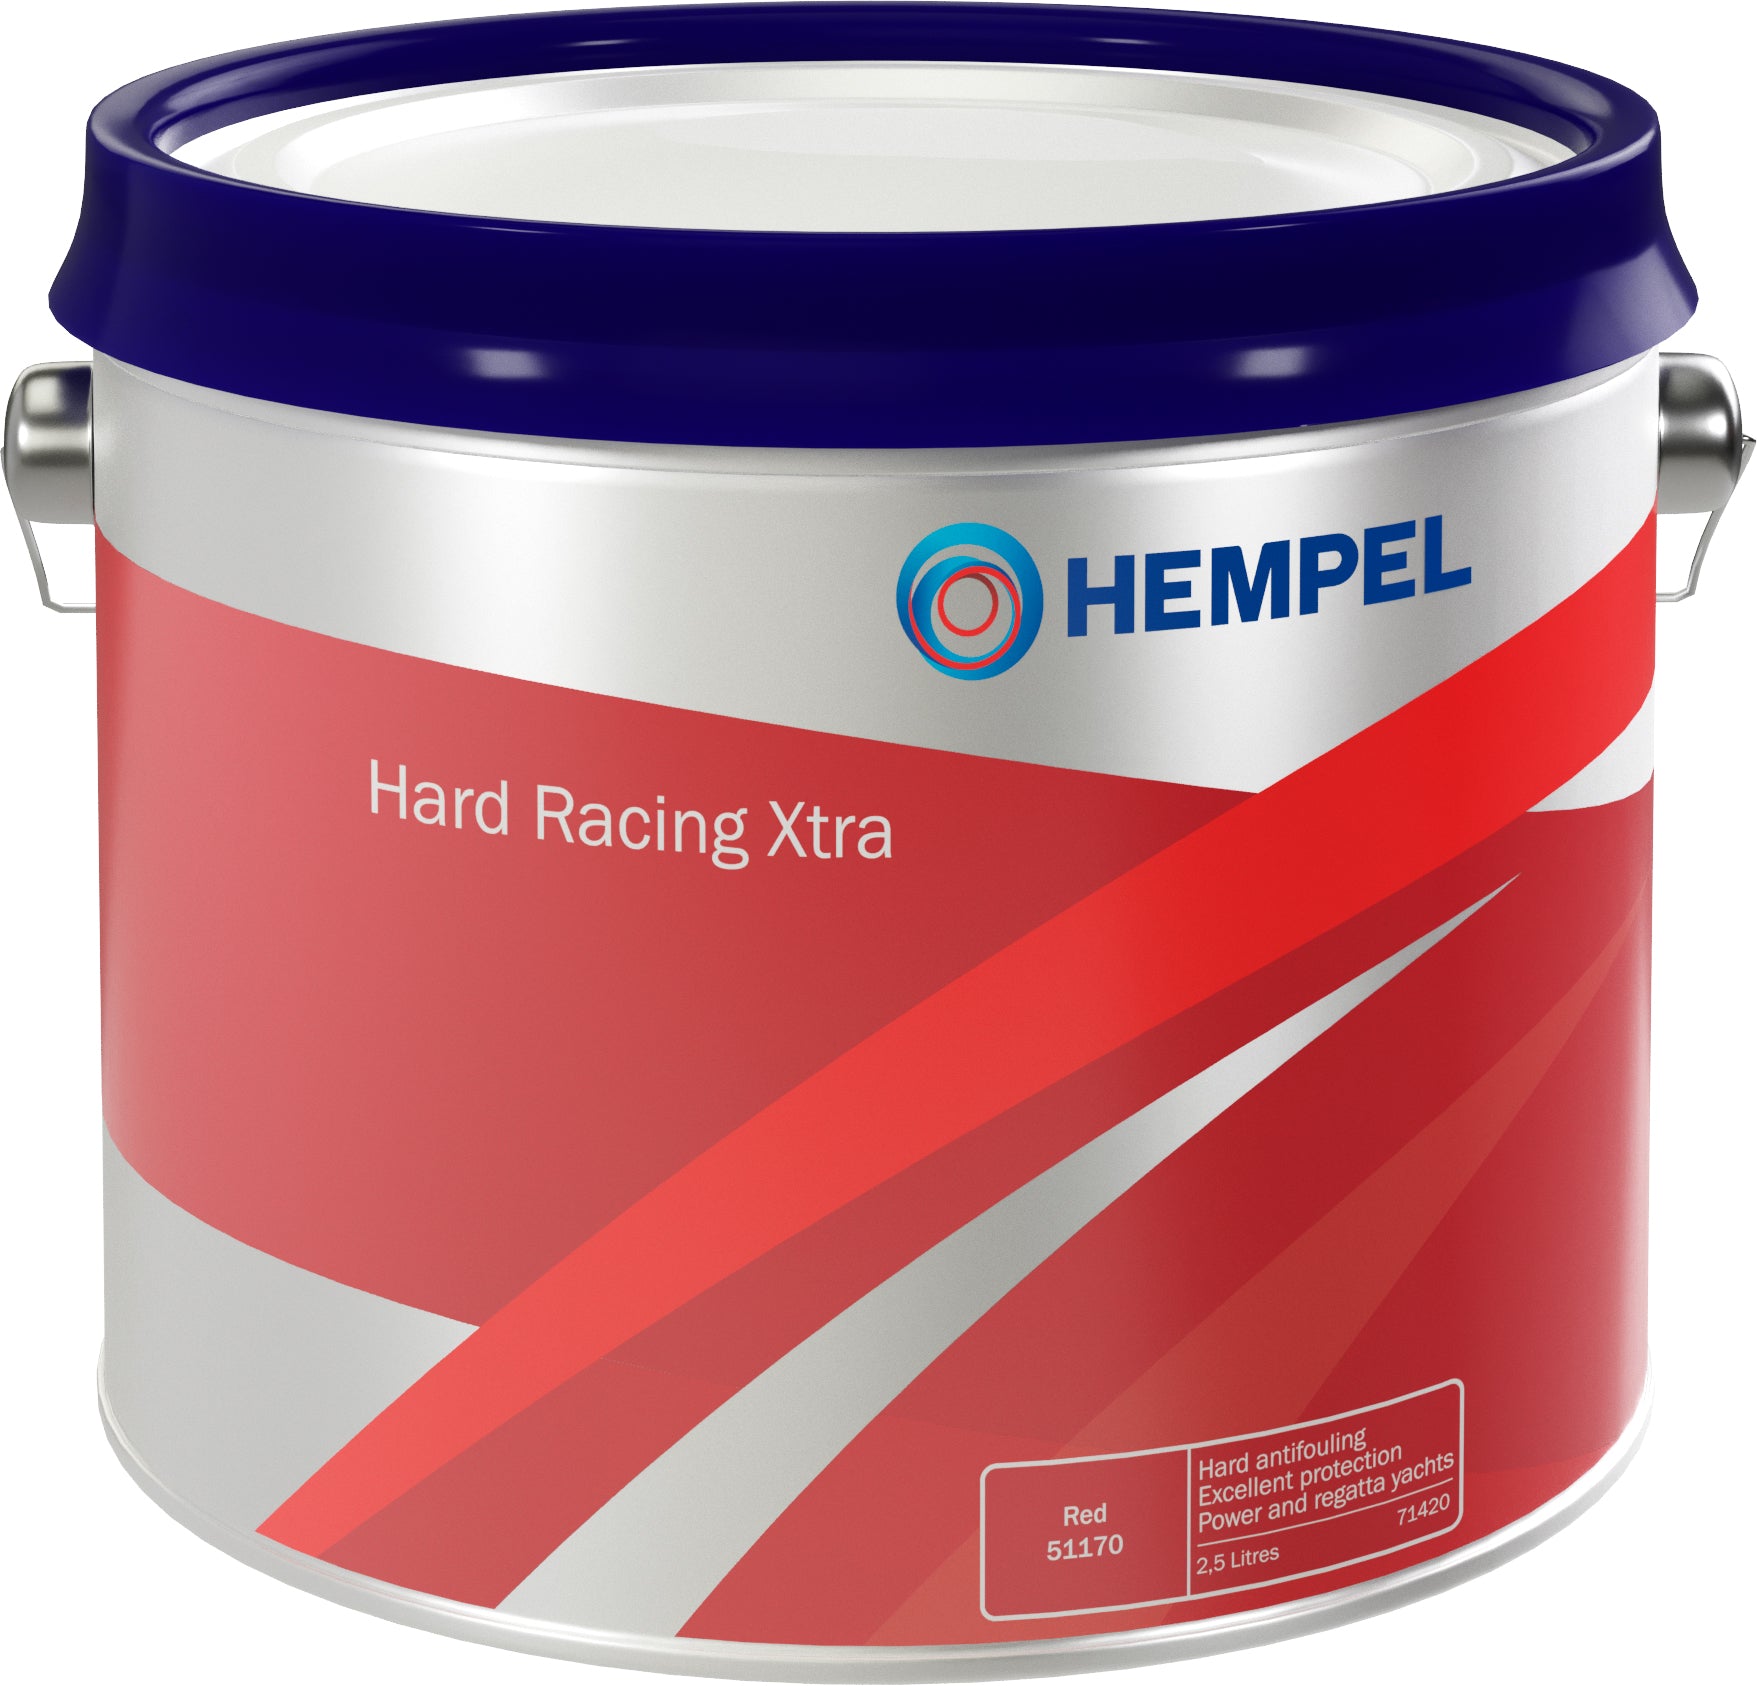 Hard Racing XTRA mørkblå 30390 2.5 ltr.